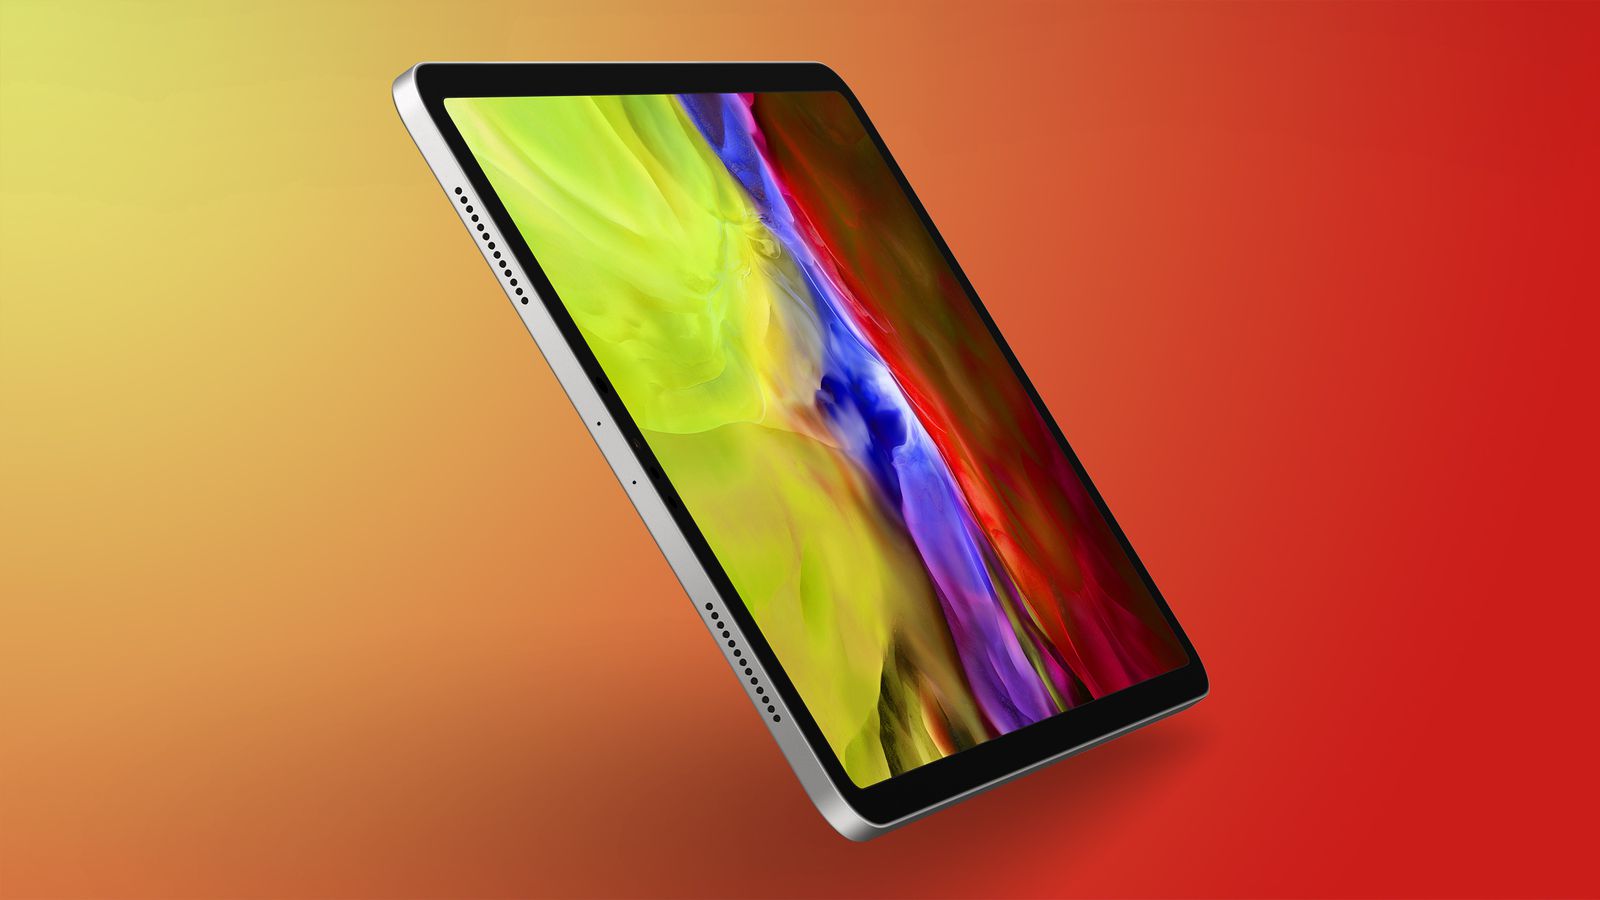 iPad Pro M2 sắp tới được trang bị những công nghệ mới nhất để mang đến sự trải nghiệm tốt hơn cho người dùng. Những hình ảnh về thiết kế mới này sẽ khiến bạn hào hứng và muốn sở hữu ngay cho mình.